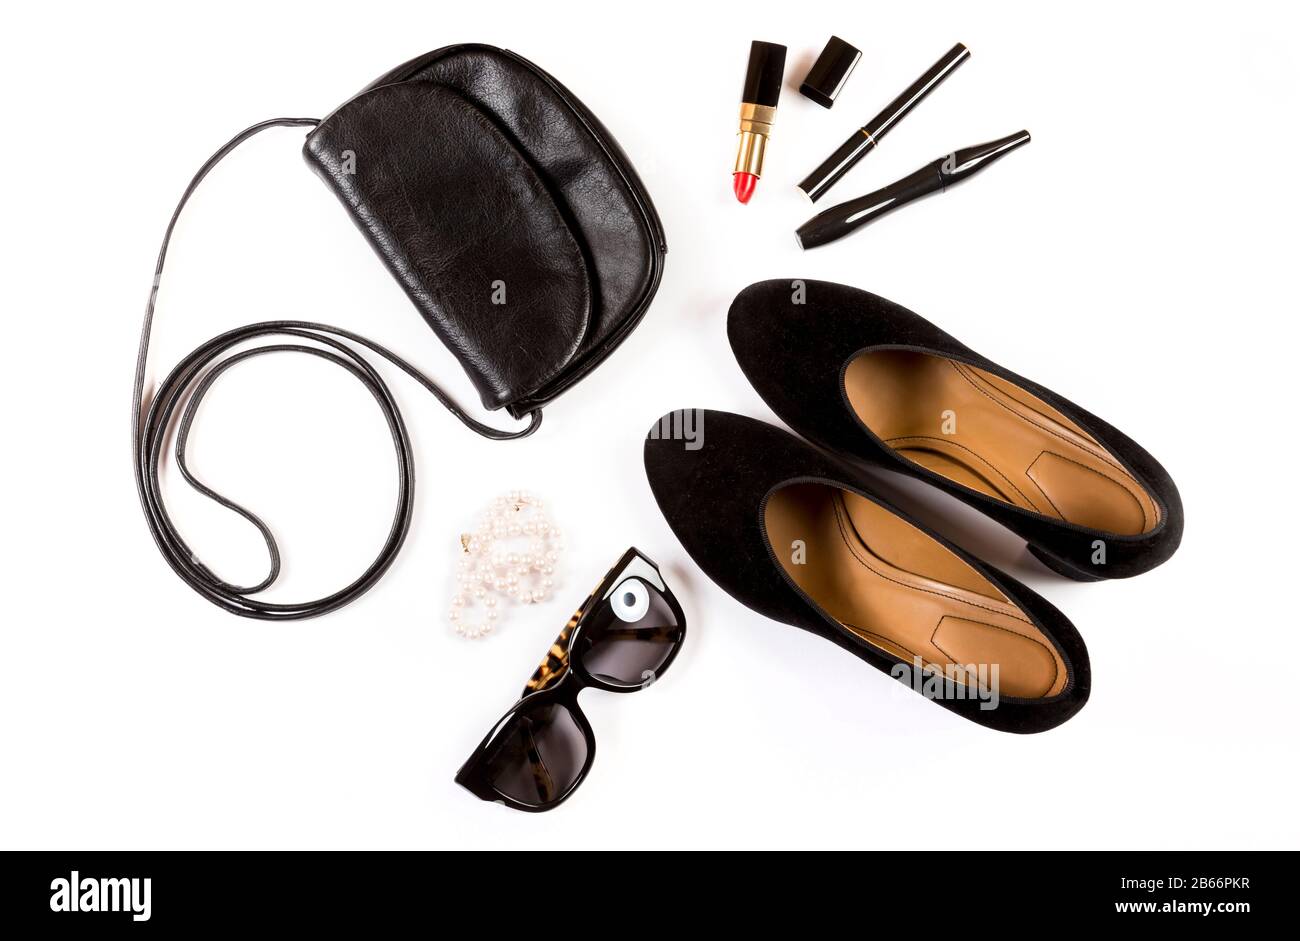 Accesorios flaplay con bolso, gafas de sol, cosméticos y zapatos sobre fondo blanco. Fotografía de la vida desde arriba. Concepto de blogger de moda Foto de stock